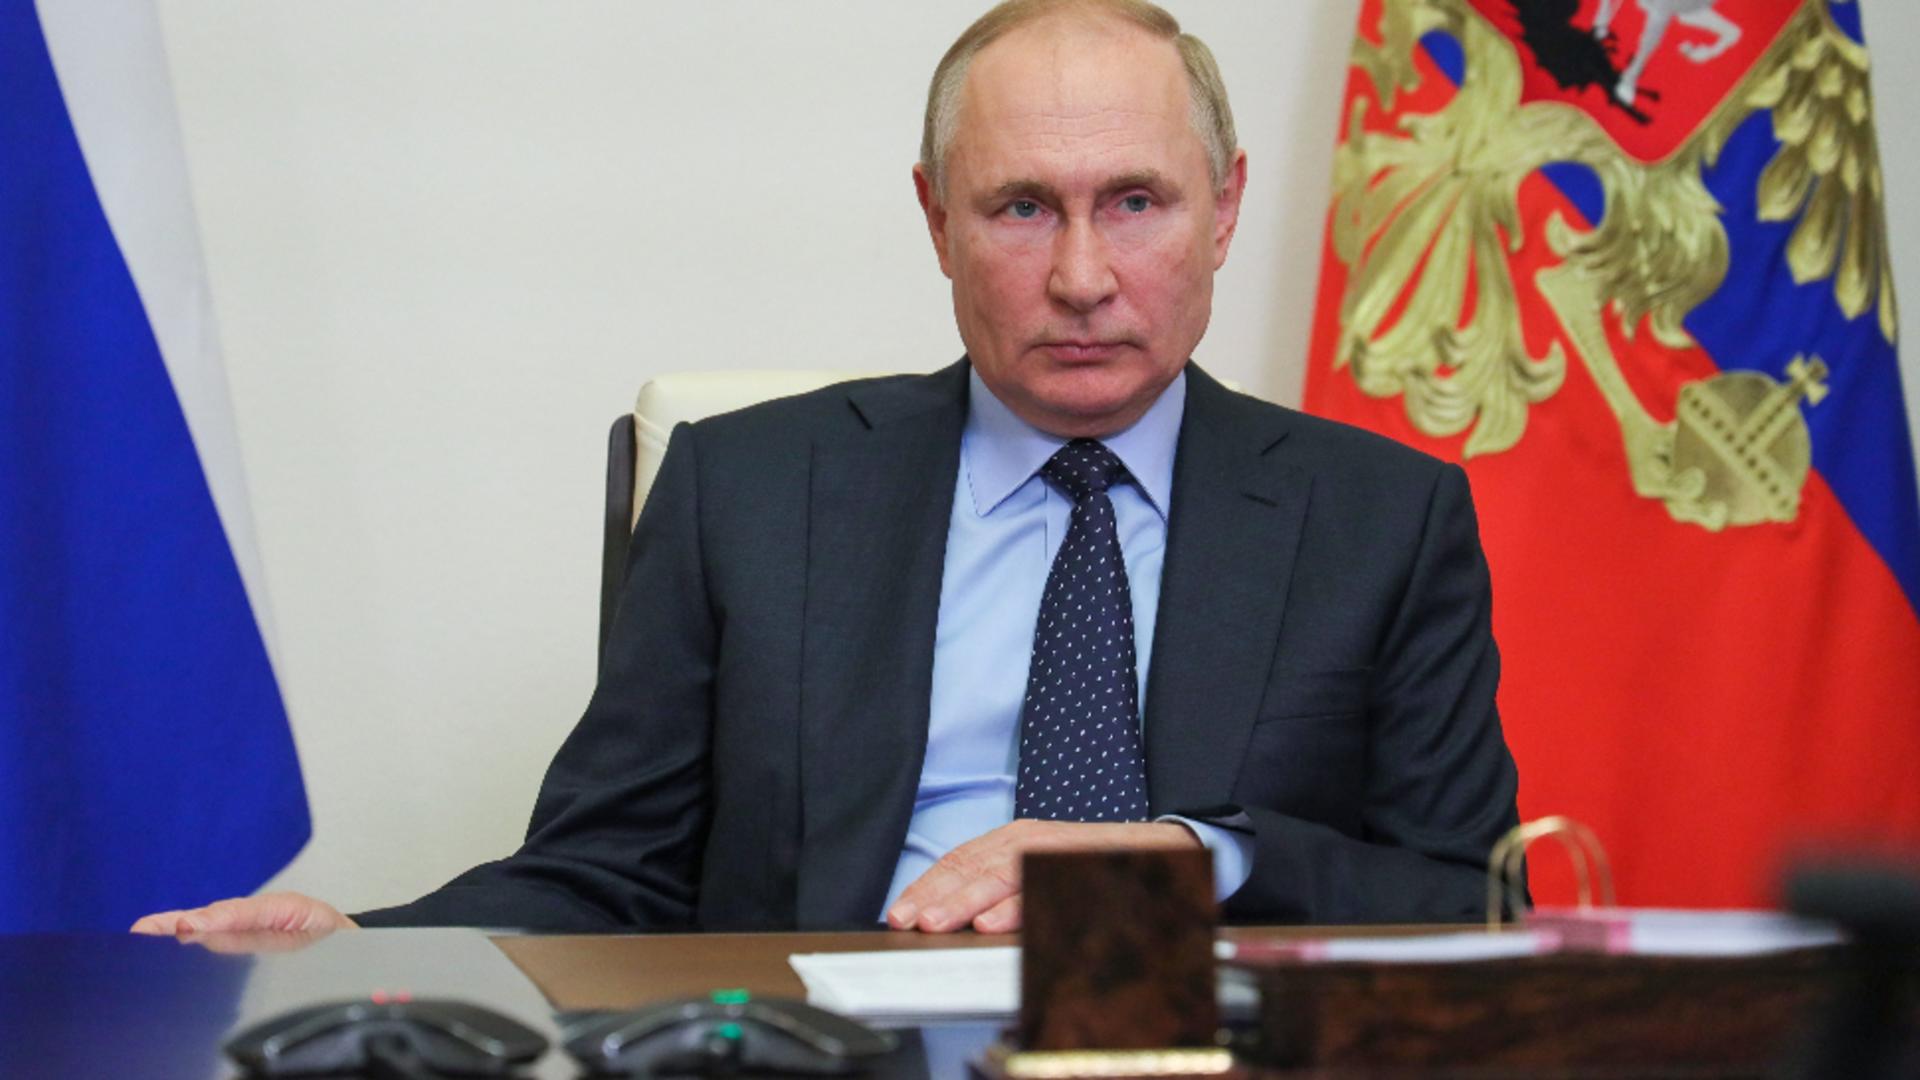 Război în Ucraina – ziua 644. Vladimir Putin acuză Occidentul că vrea să dezmembreze şi să jefuiască Rusia